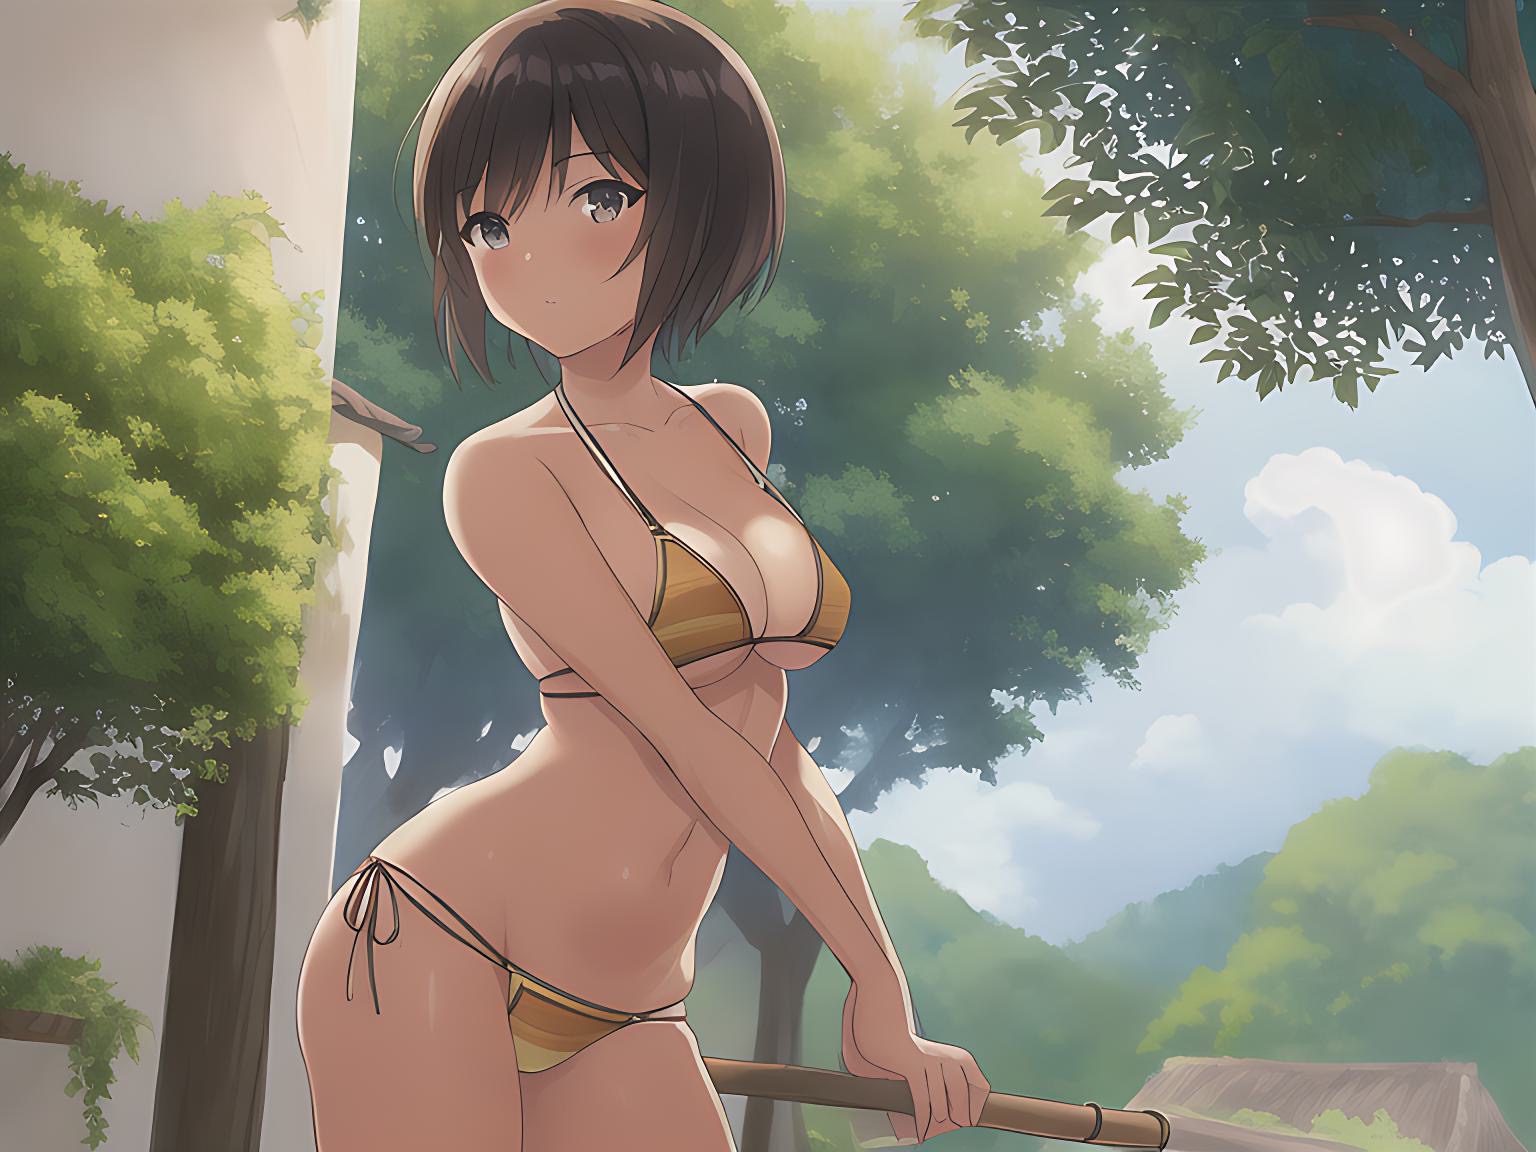 A candid image of Anime girl Kikoi